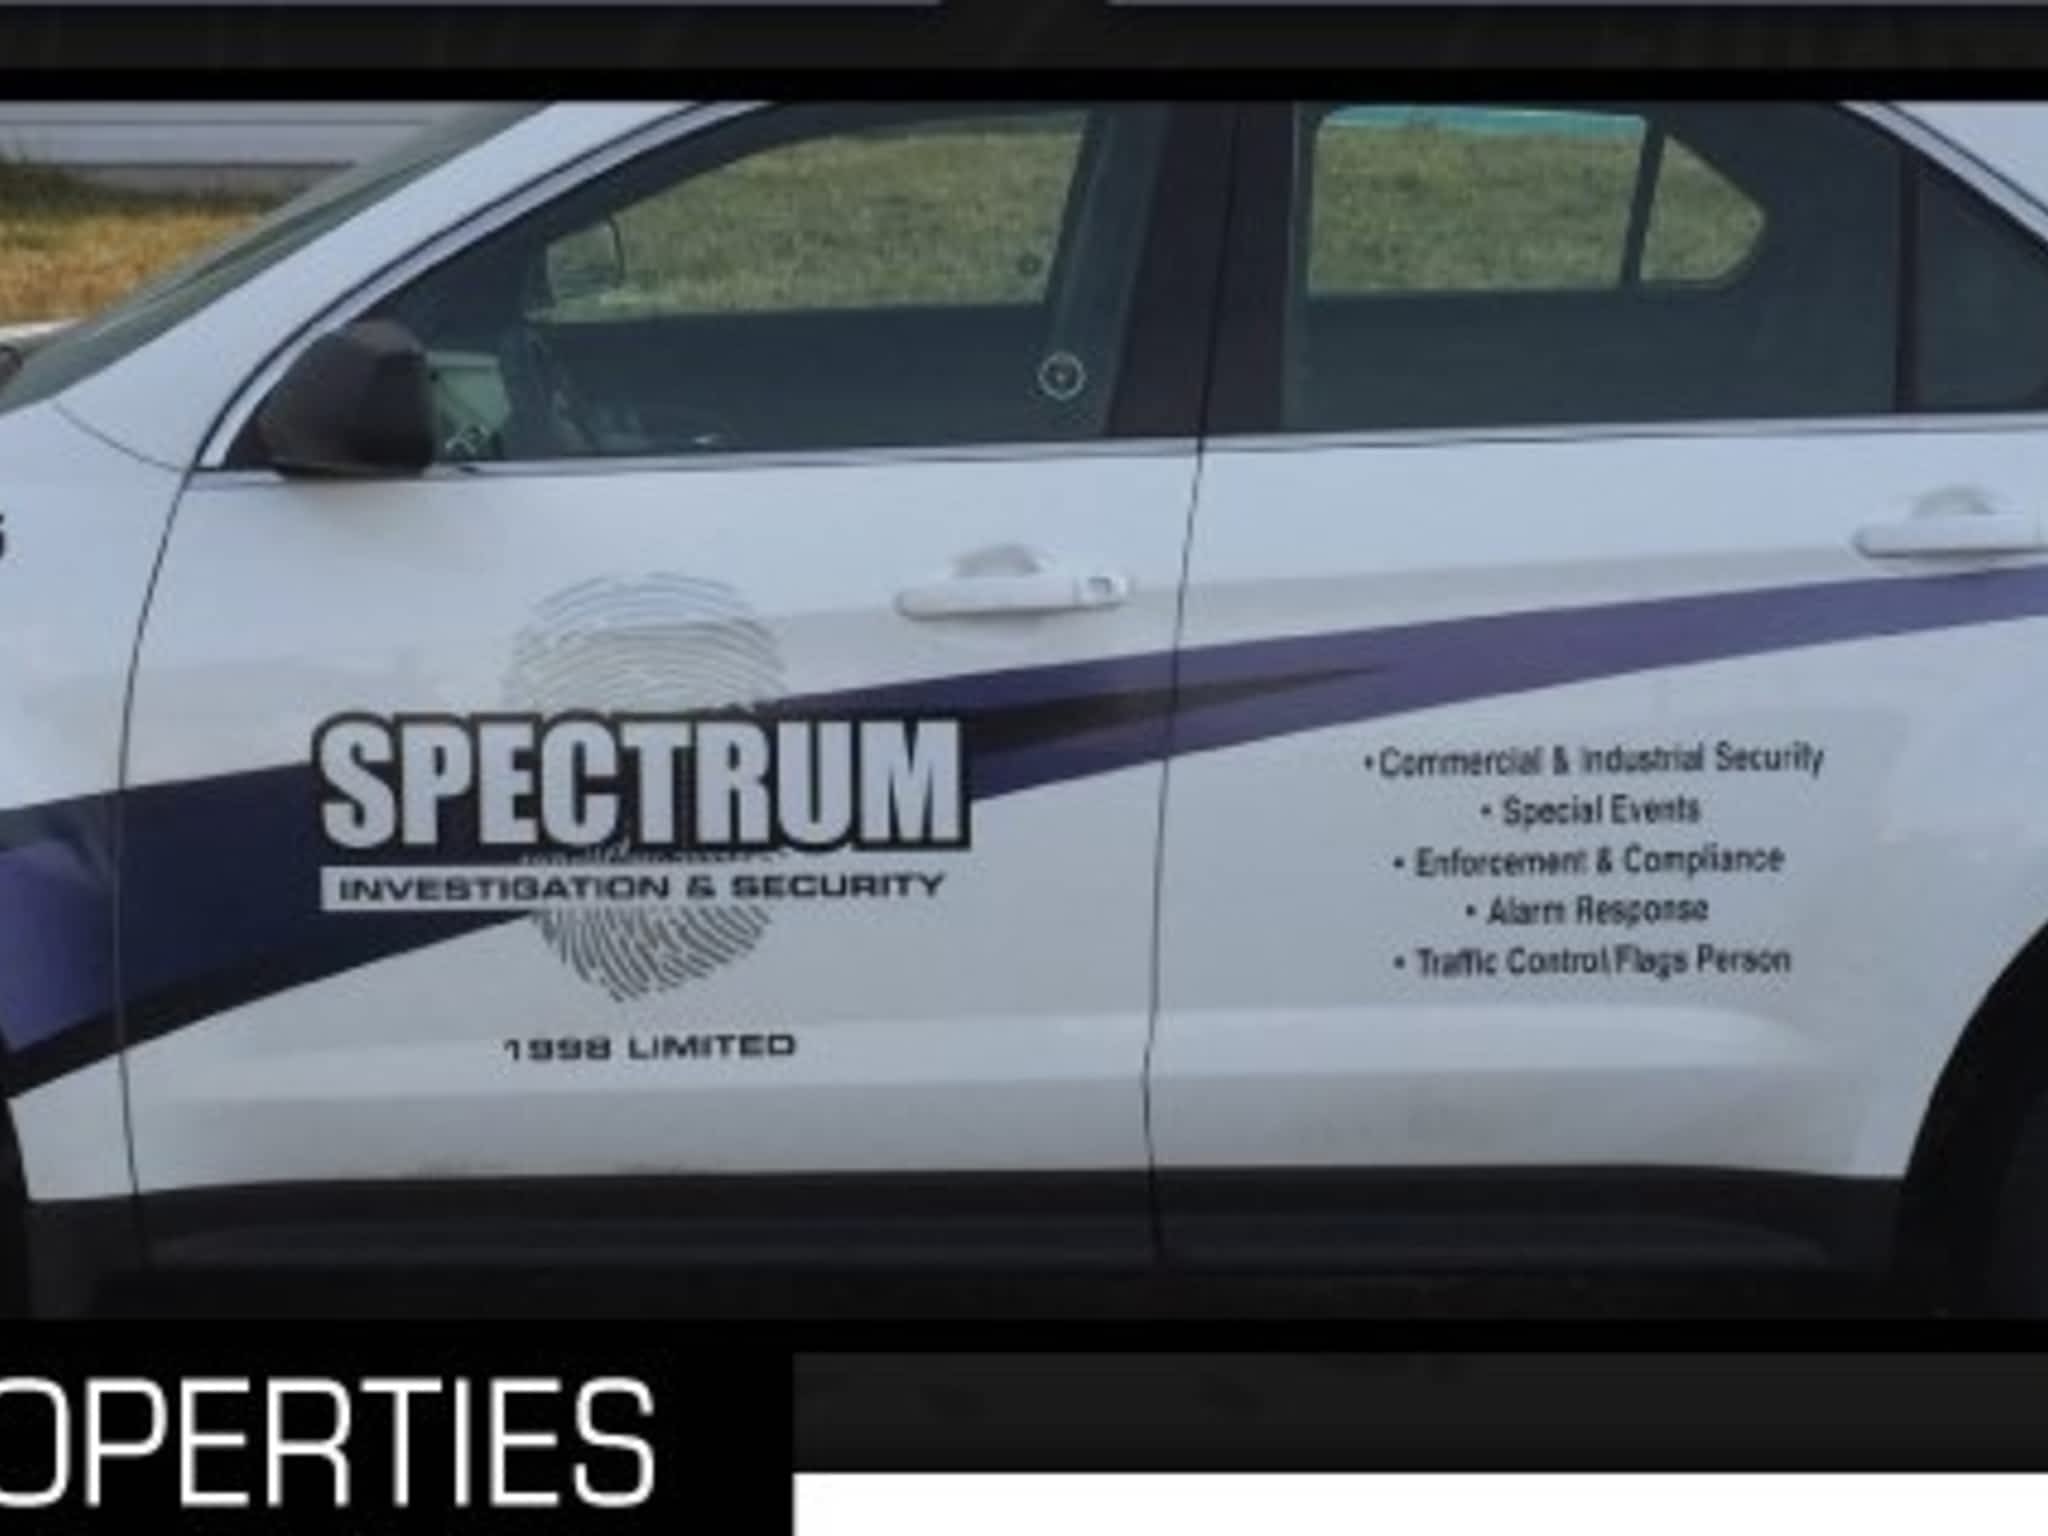 photo Spectrum Investigation & Security (1998) Ltd